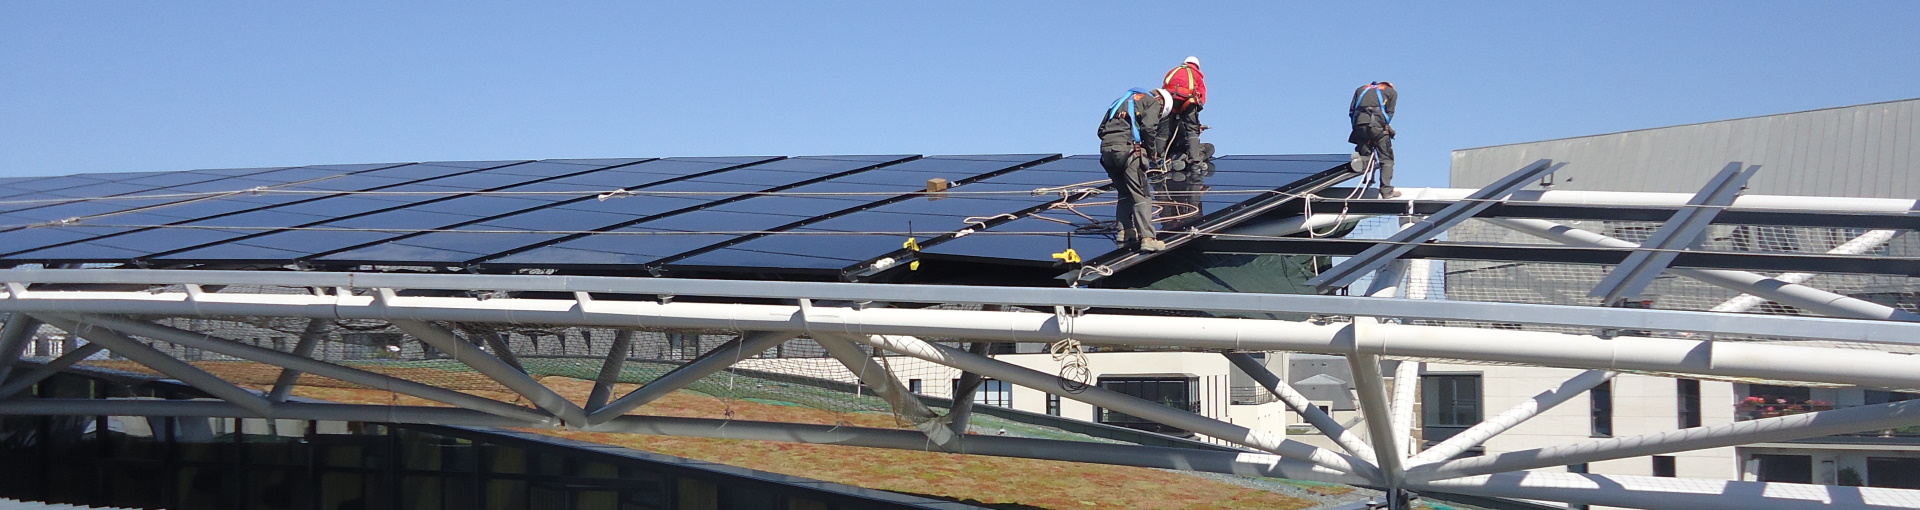 Panneaux photovoltaïques pour collectivité Bretagne